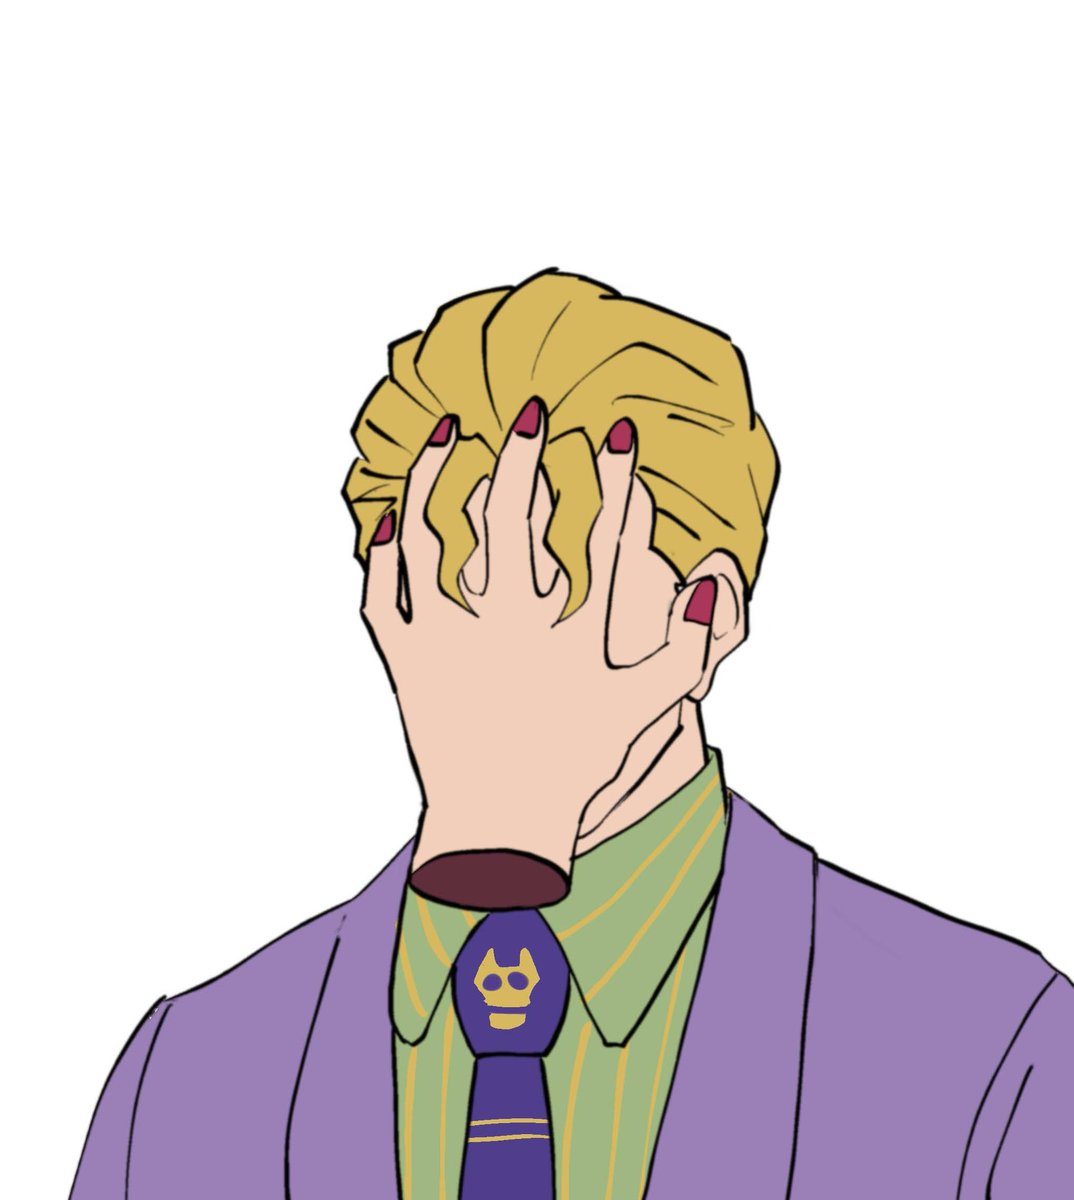 kira yoshikage disembodied limb 1boy necktie blonde hair formal suit male focus  illustration images